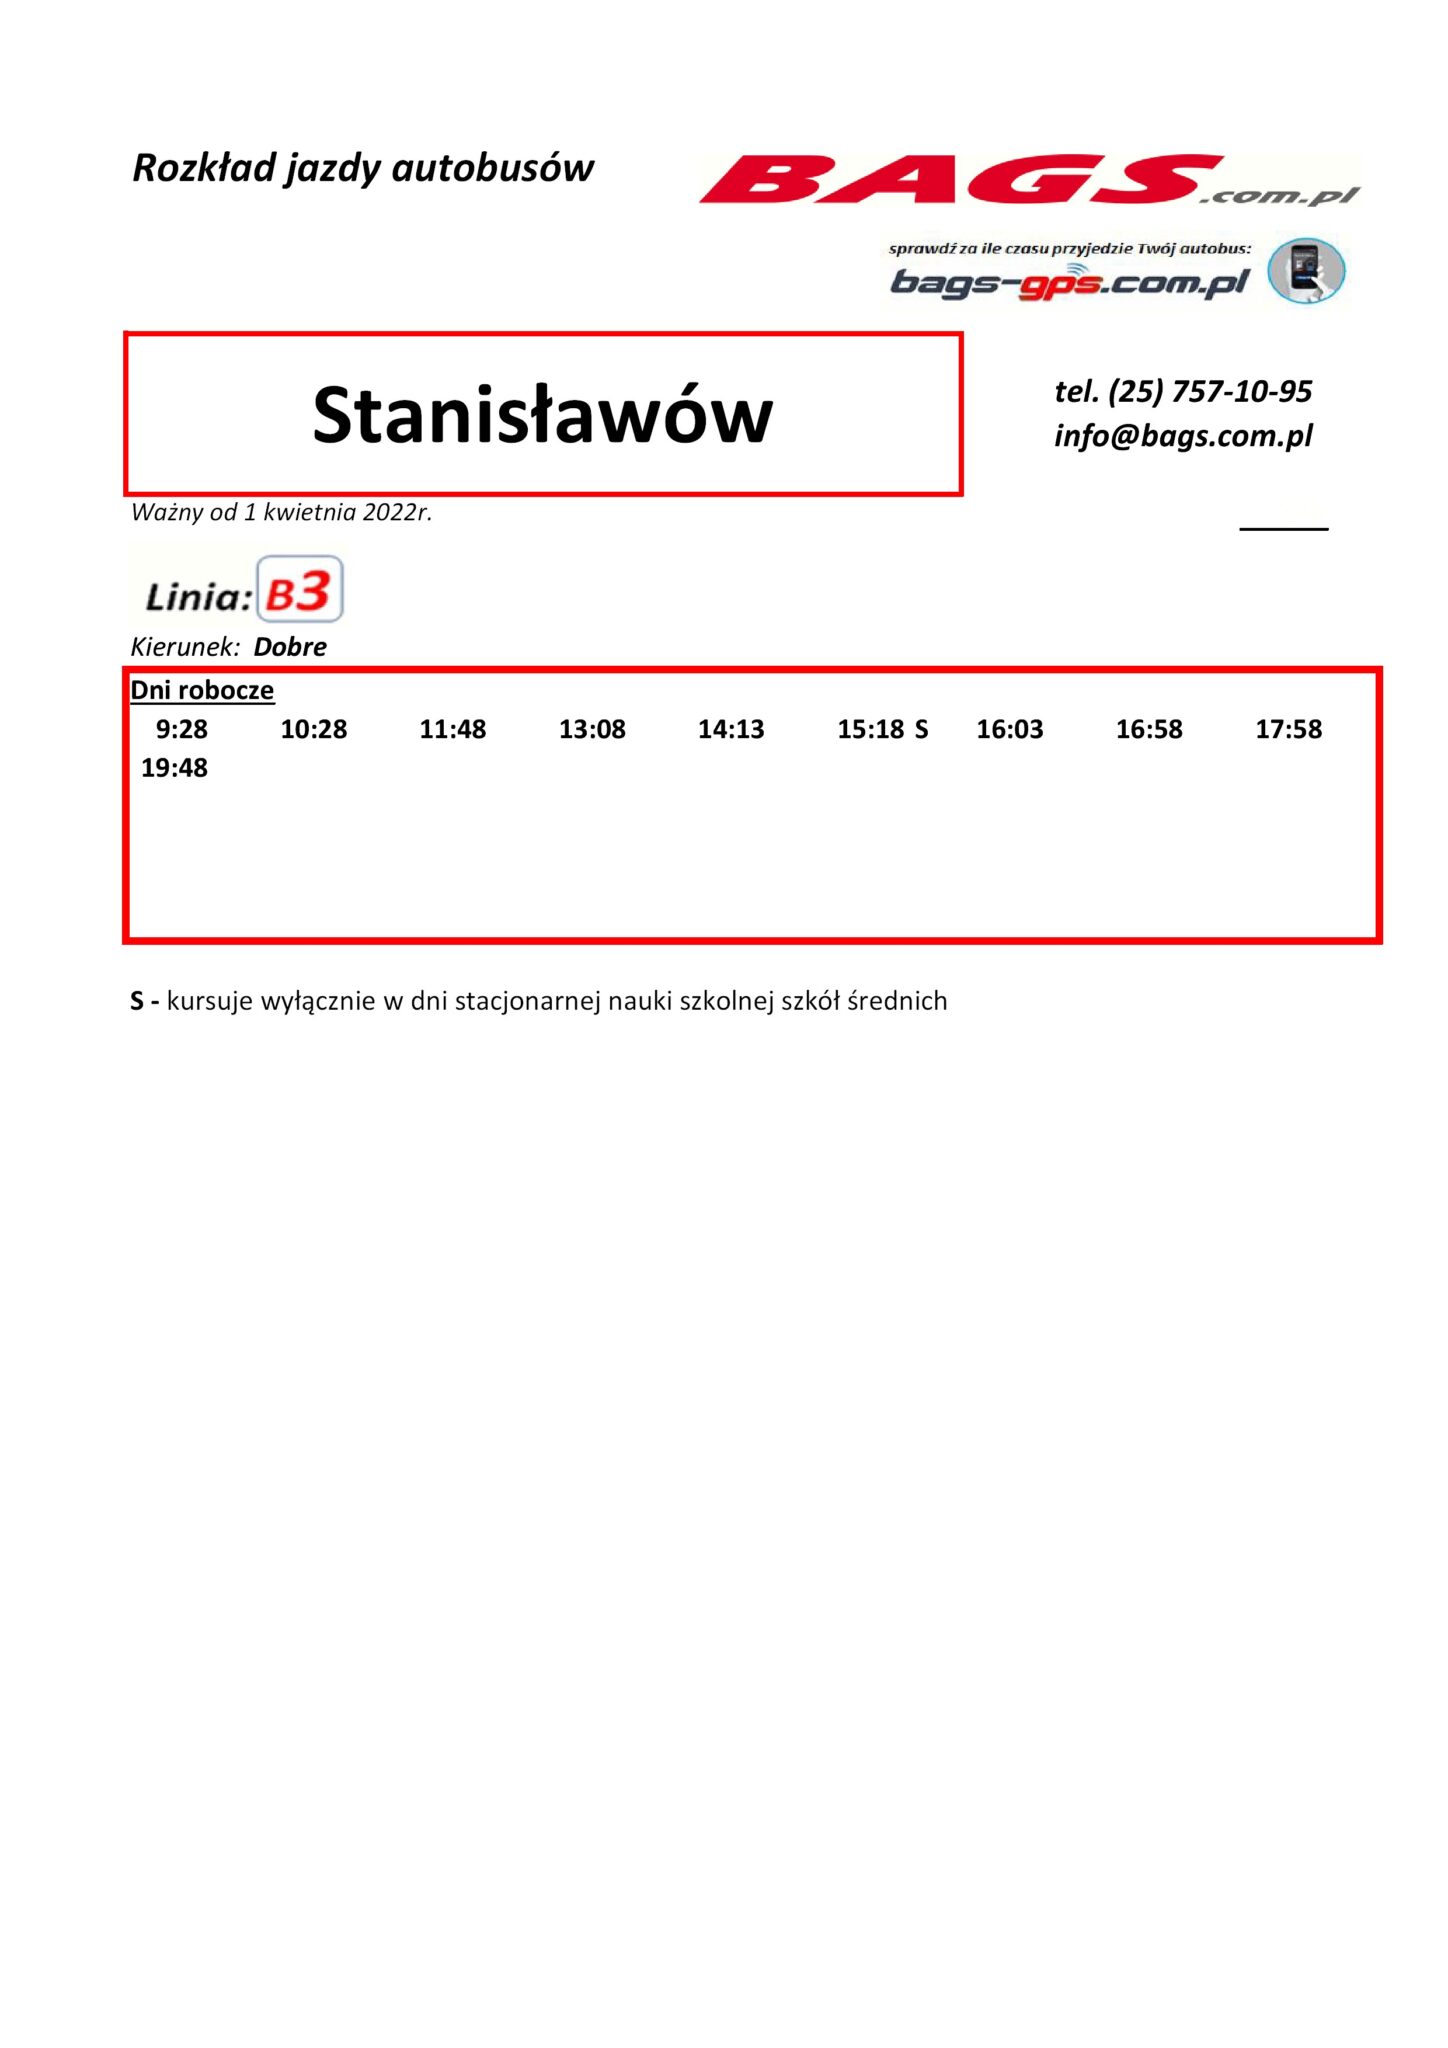 Stanislawow-1-3-1448x2048